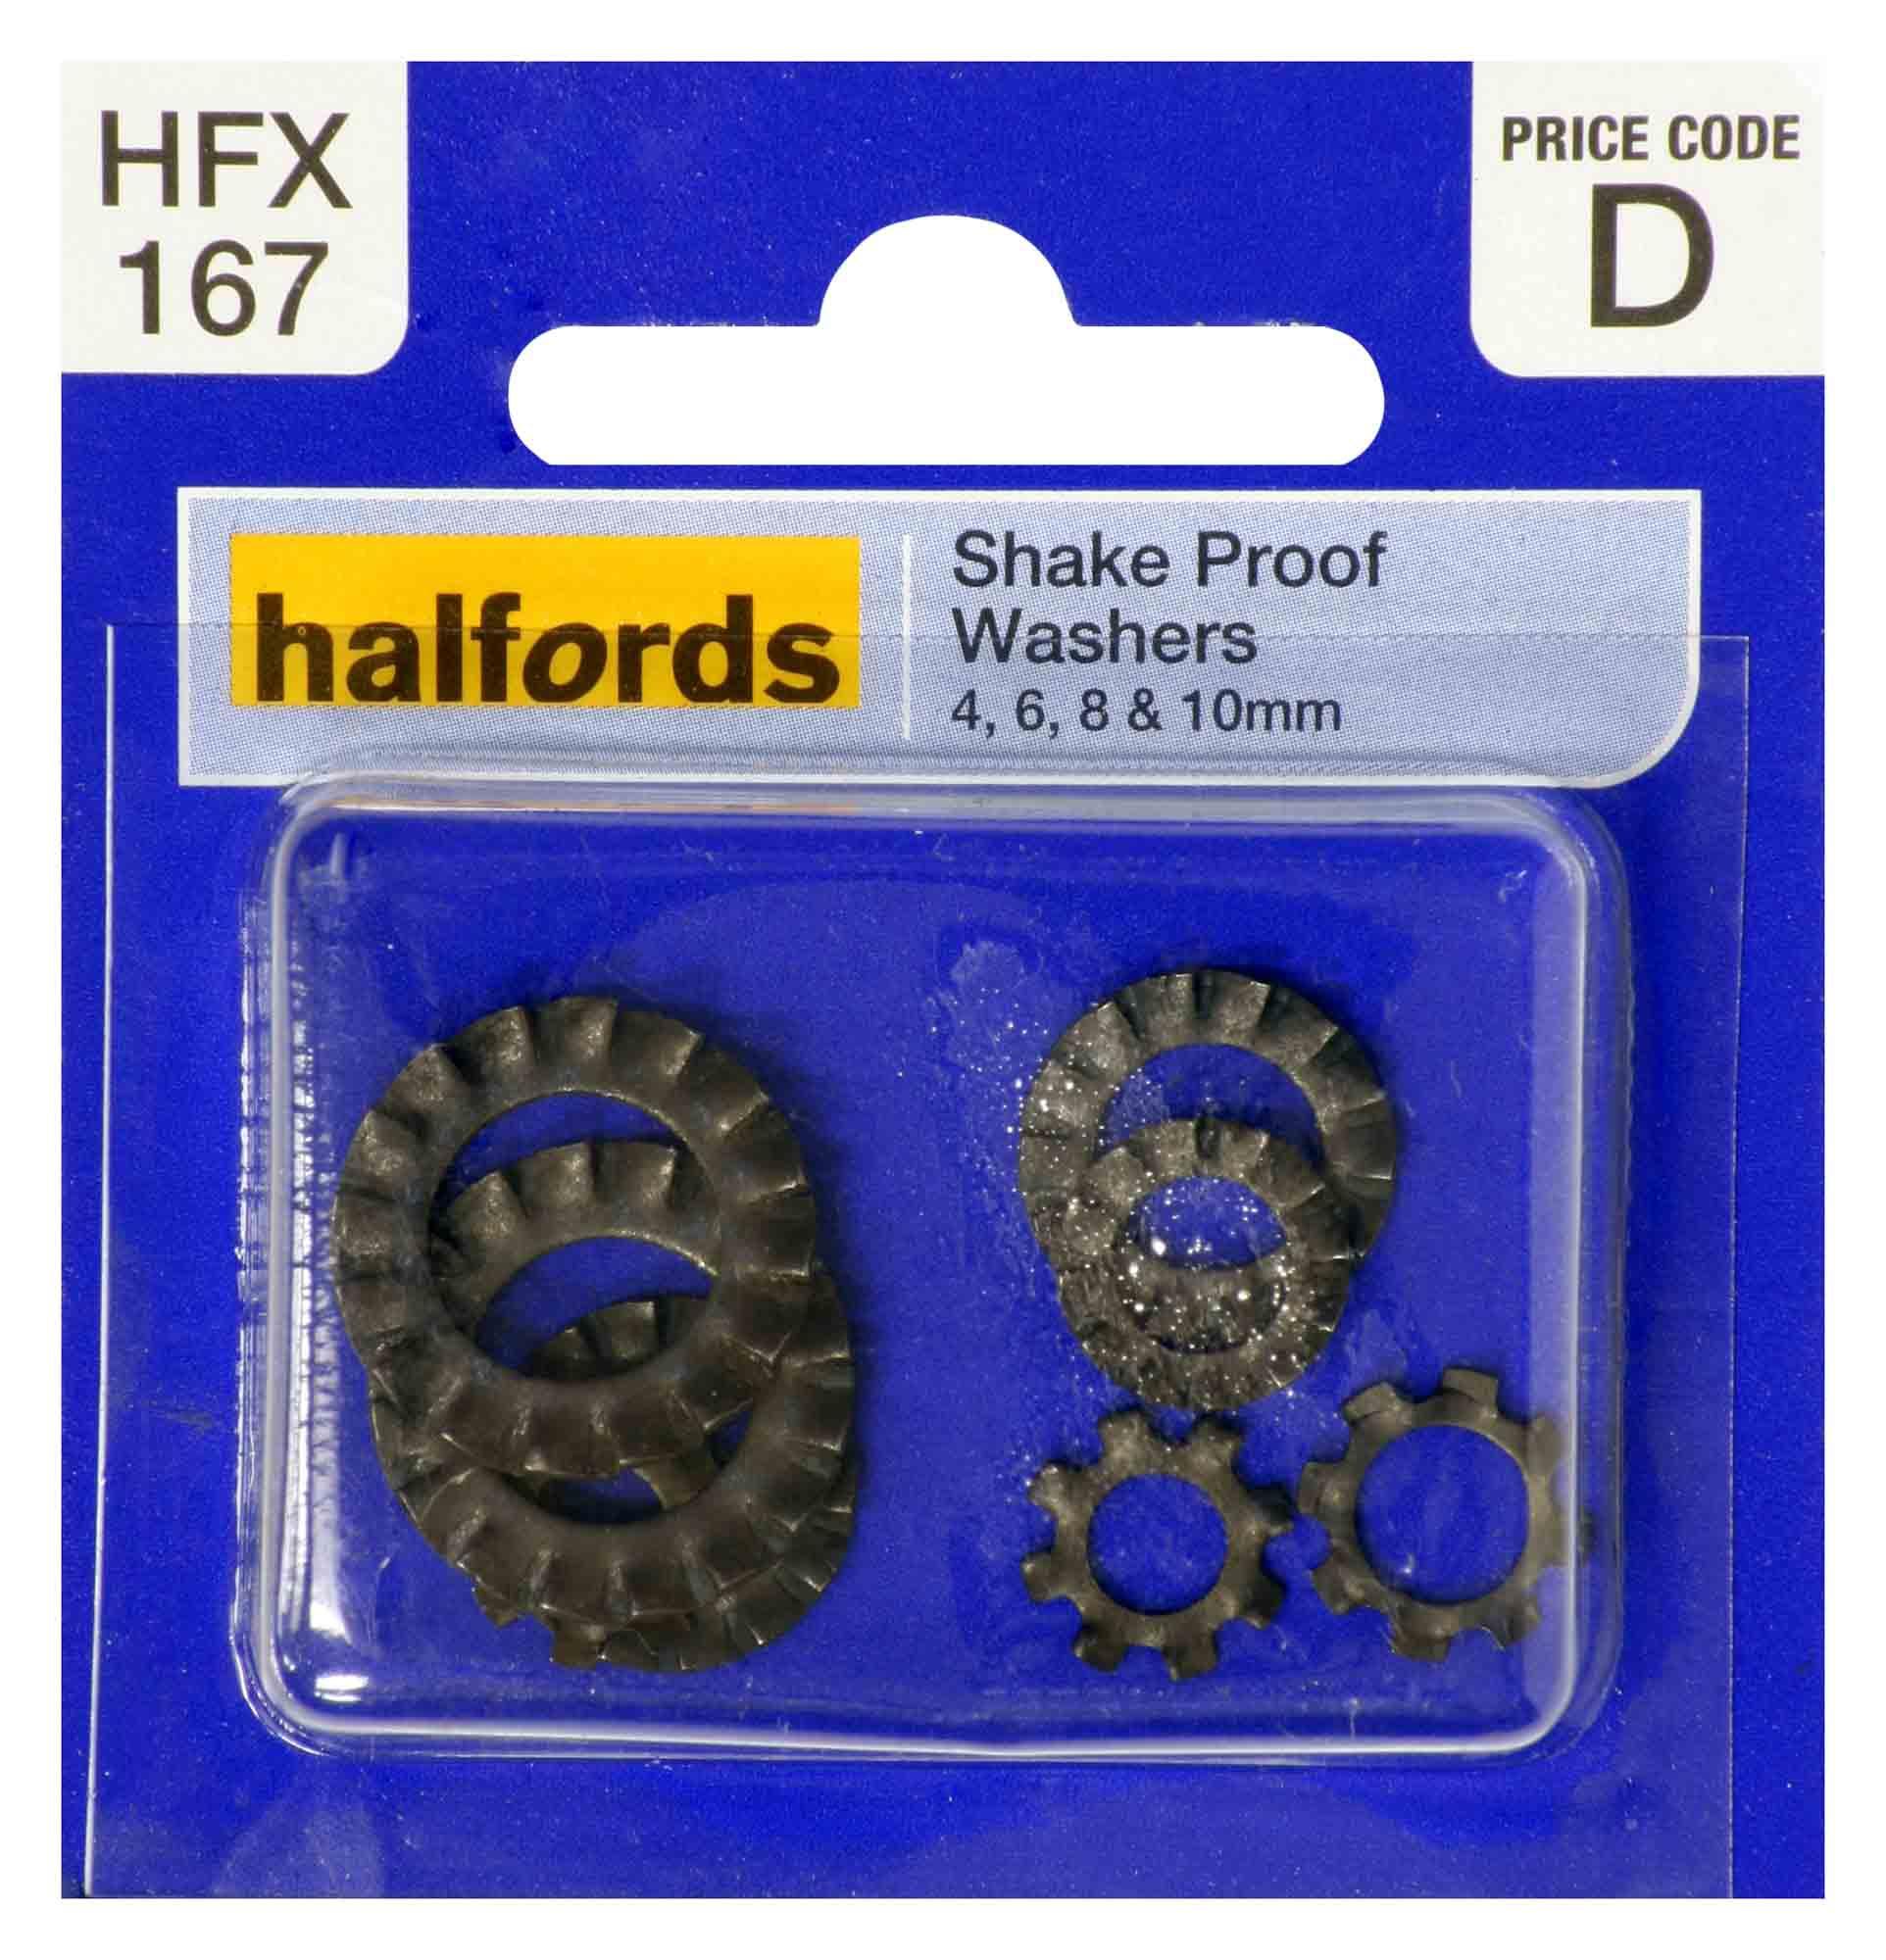 Halfords Shakeproof Washers